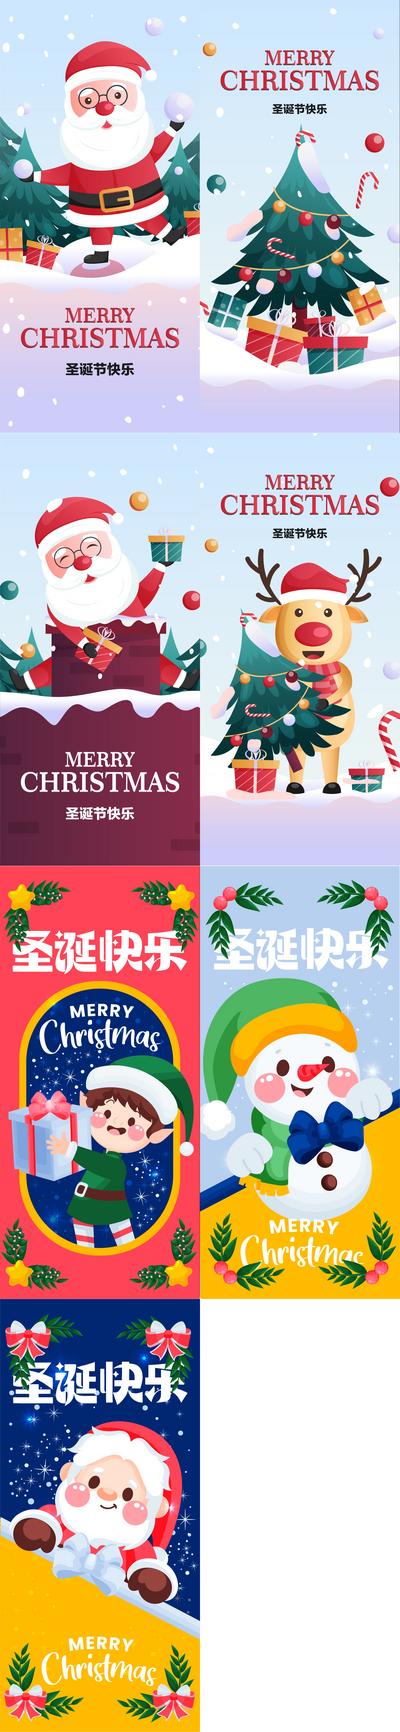 【南门网】广告 海报 合集 圣诞节 圣诞老人 麋鹿 圣诞树 冬天 下雪